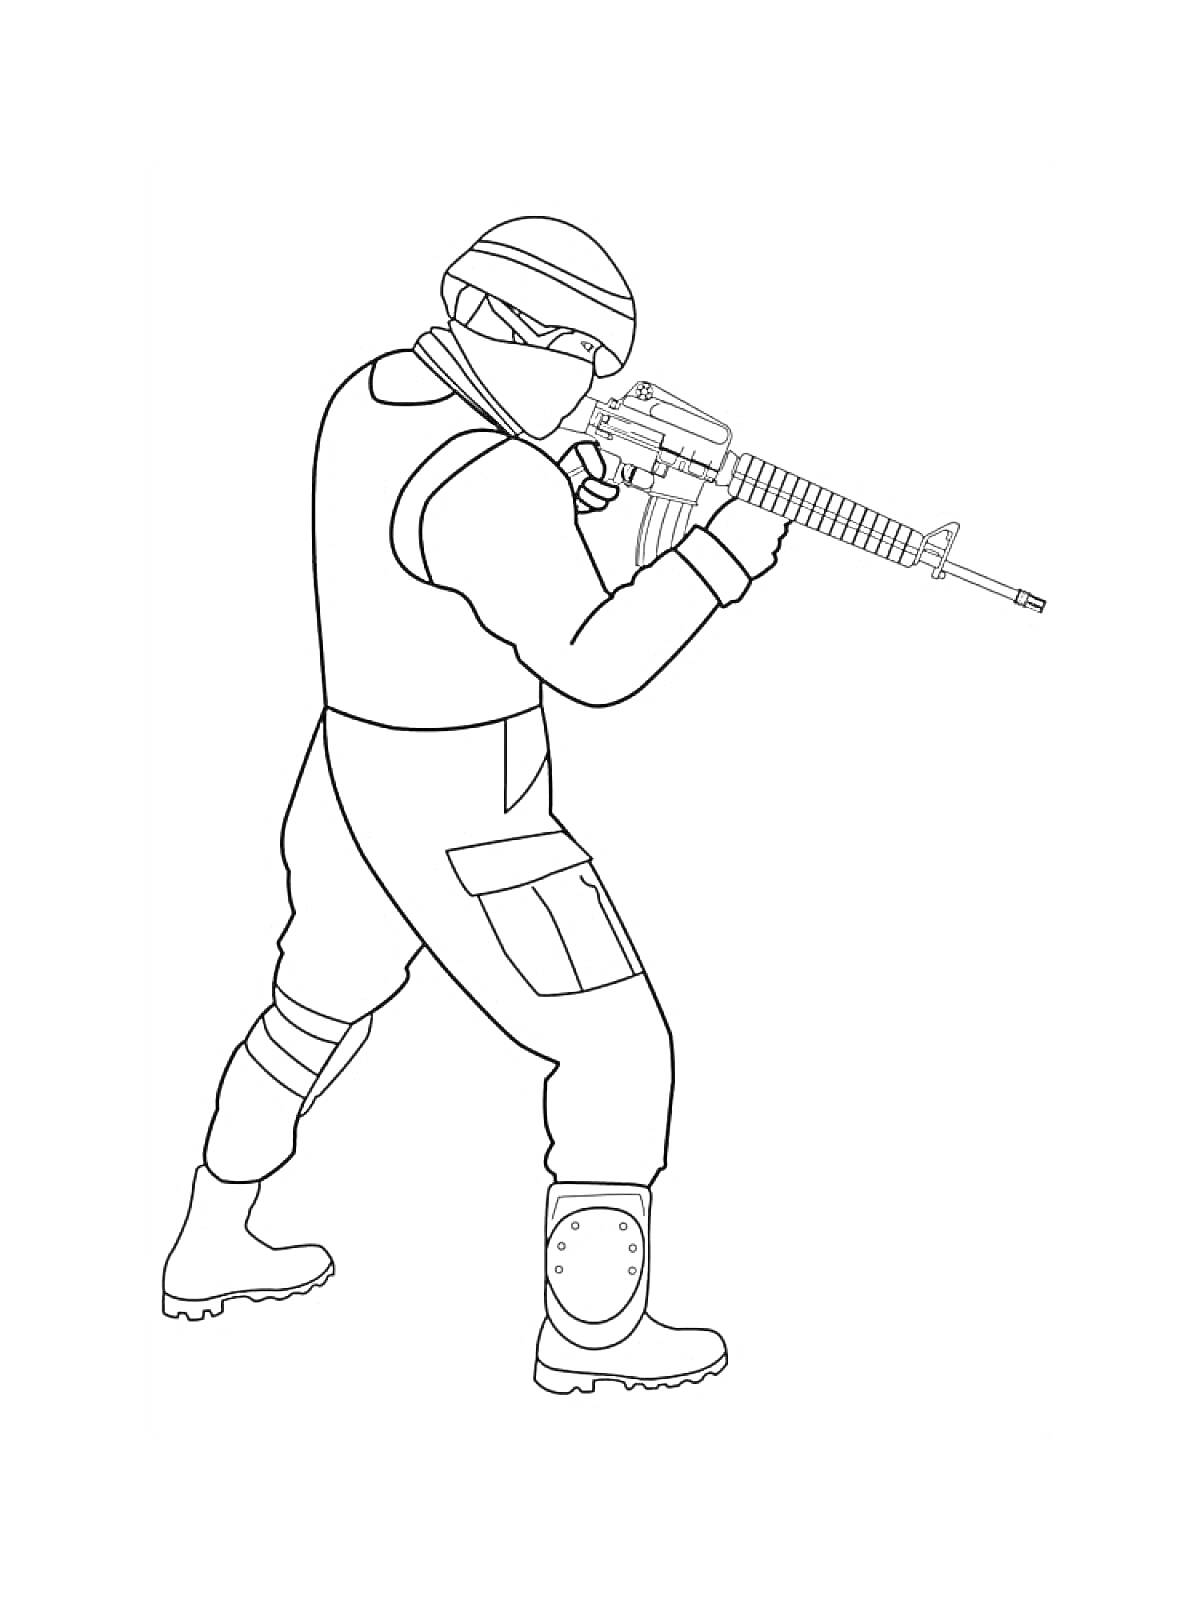  Солдат со штурмовой винтовкой в игре КС ГО